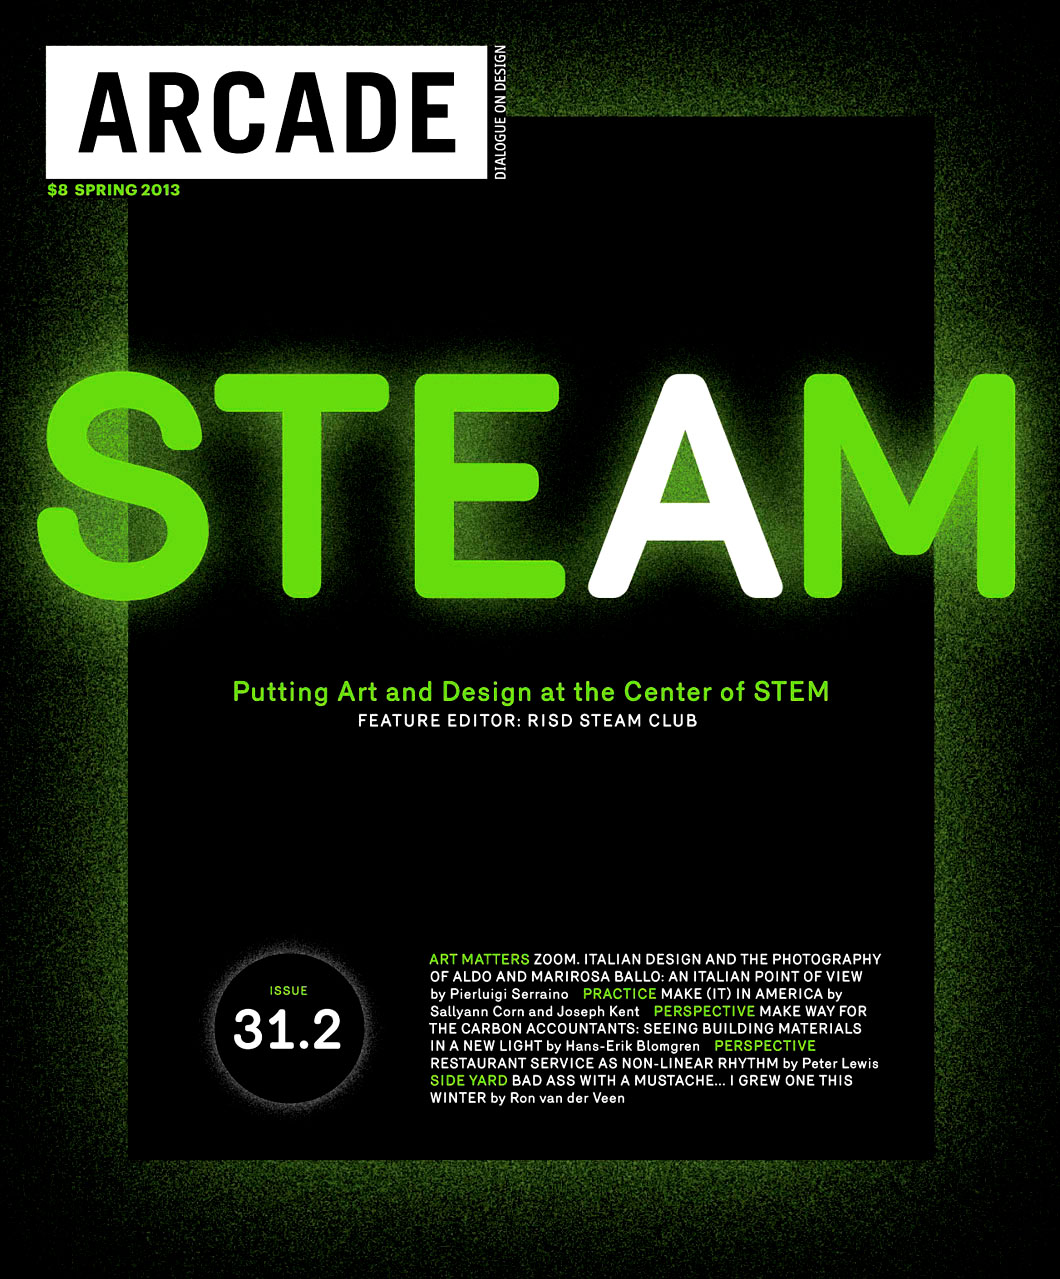 ARCADE magazine issue on STEAM